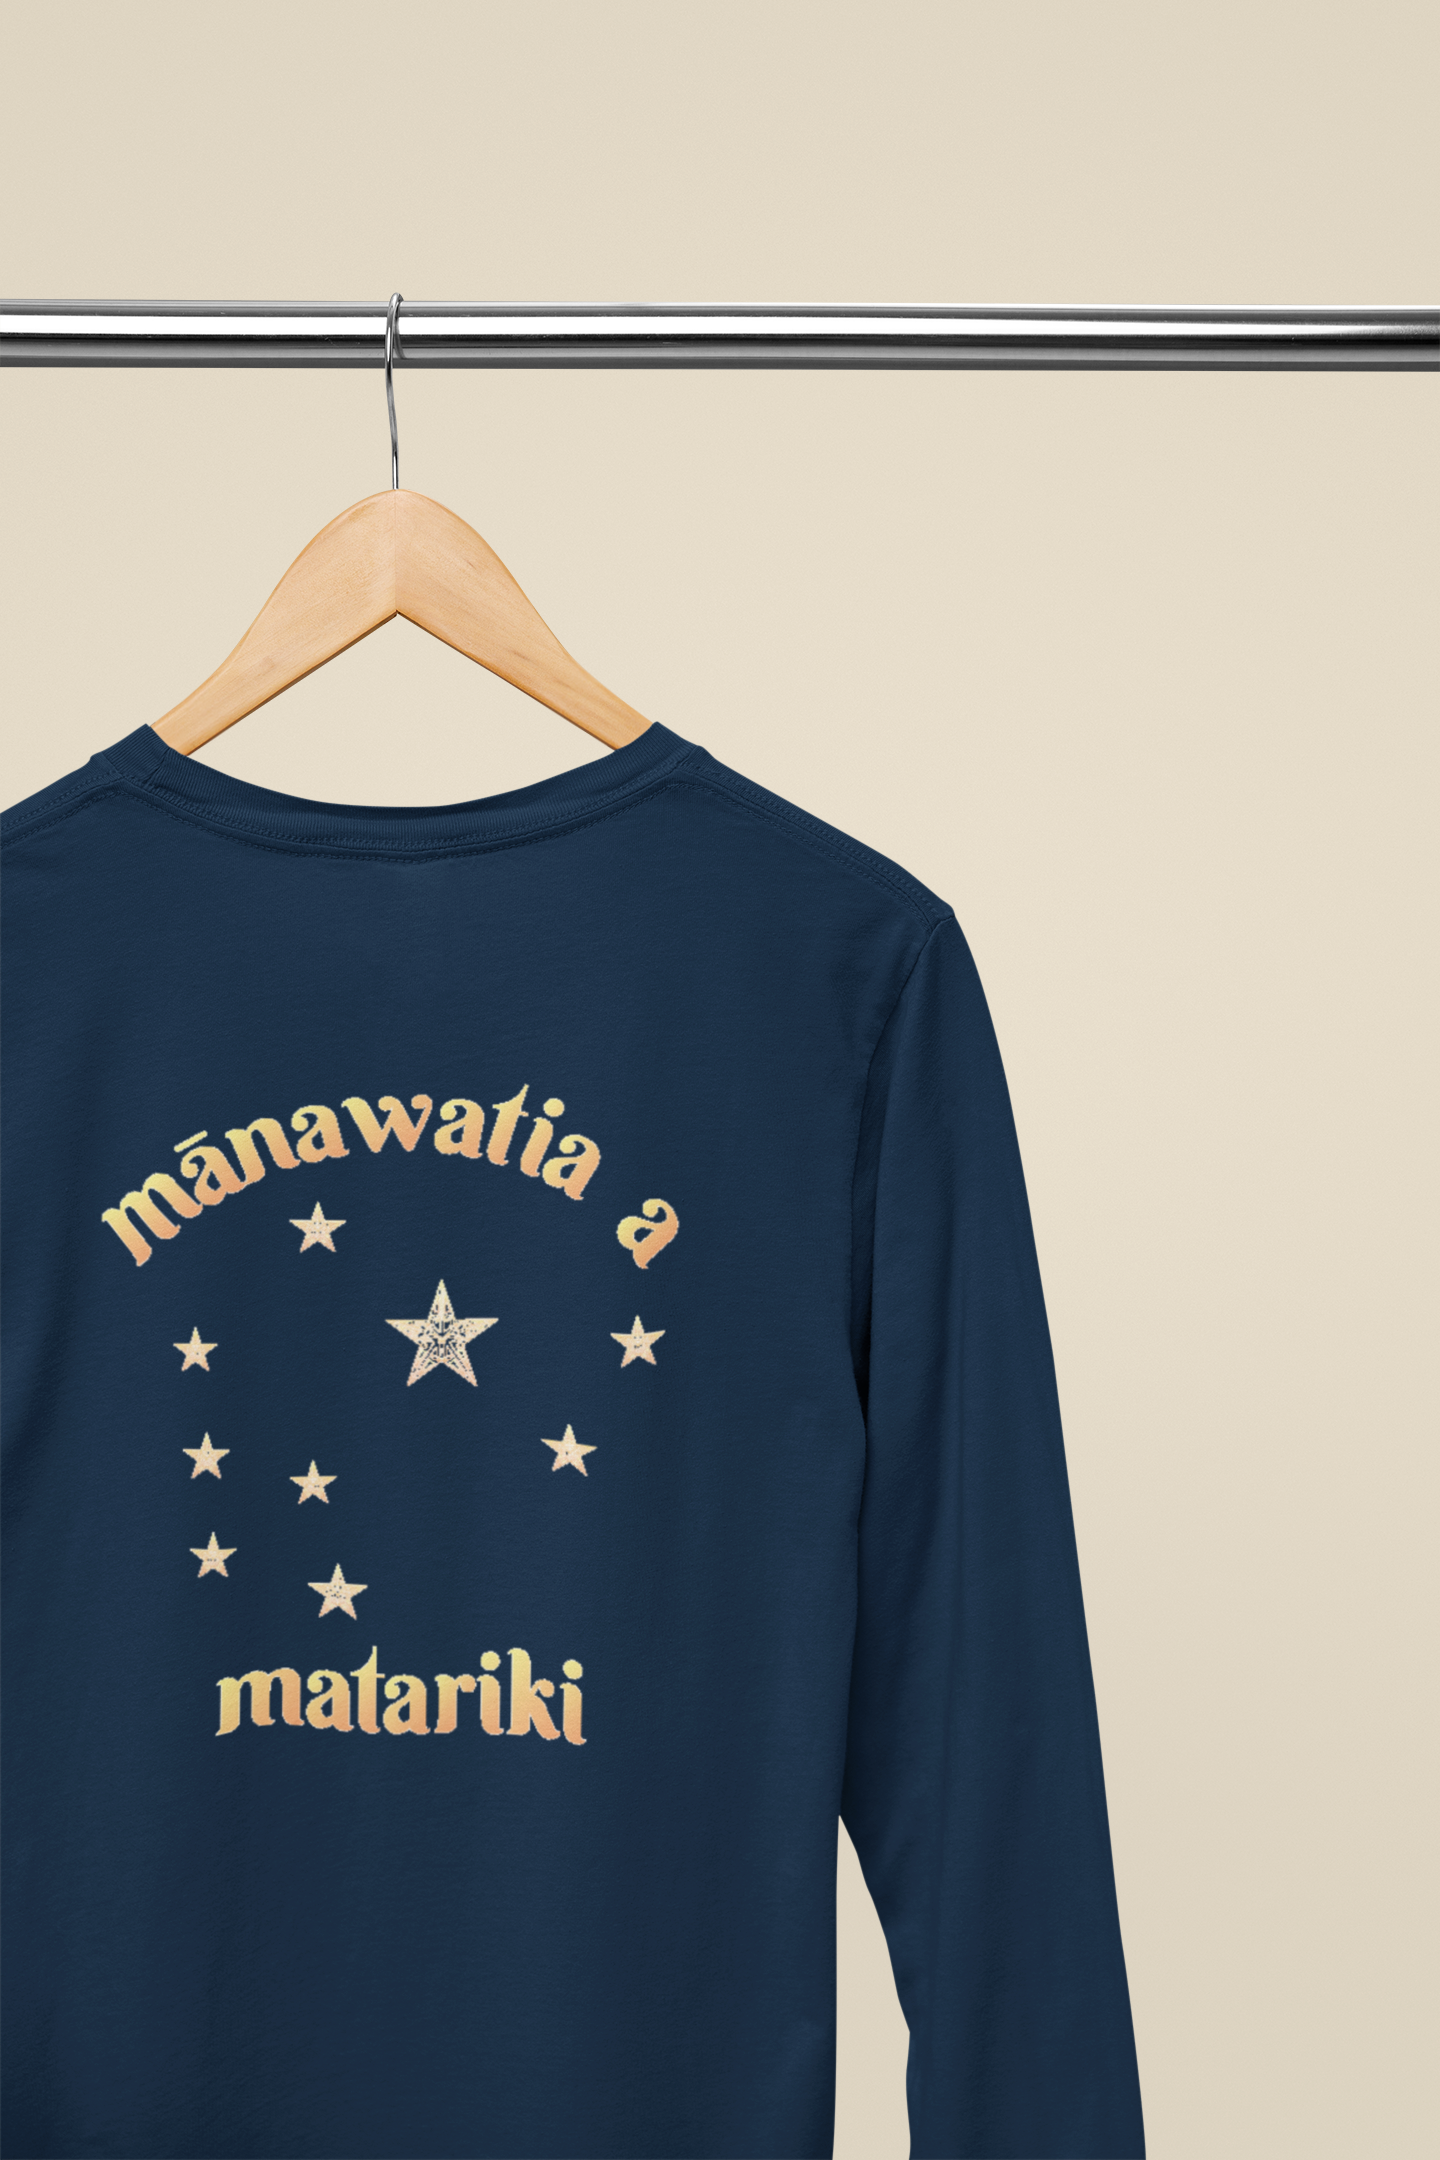 mānawatia a matariki (classic)  - Long Sleeve Tee